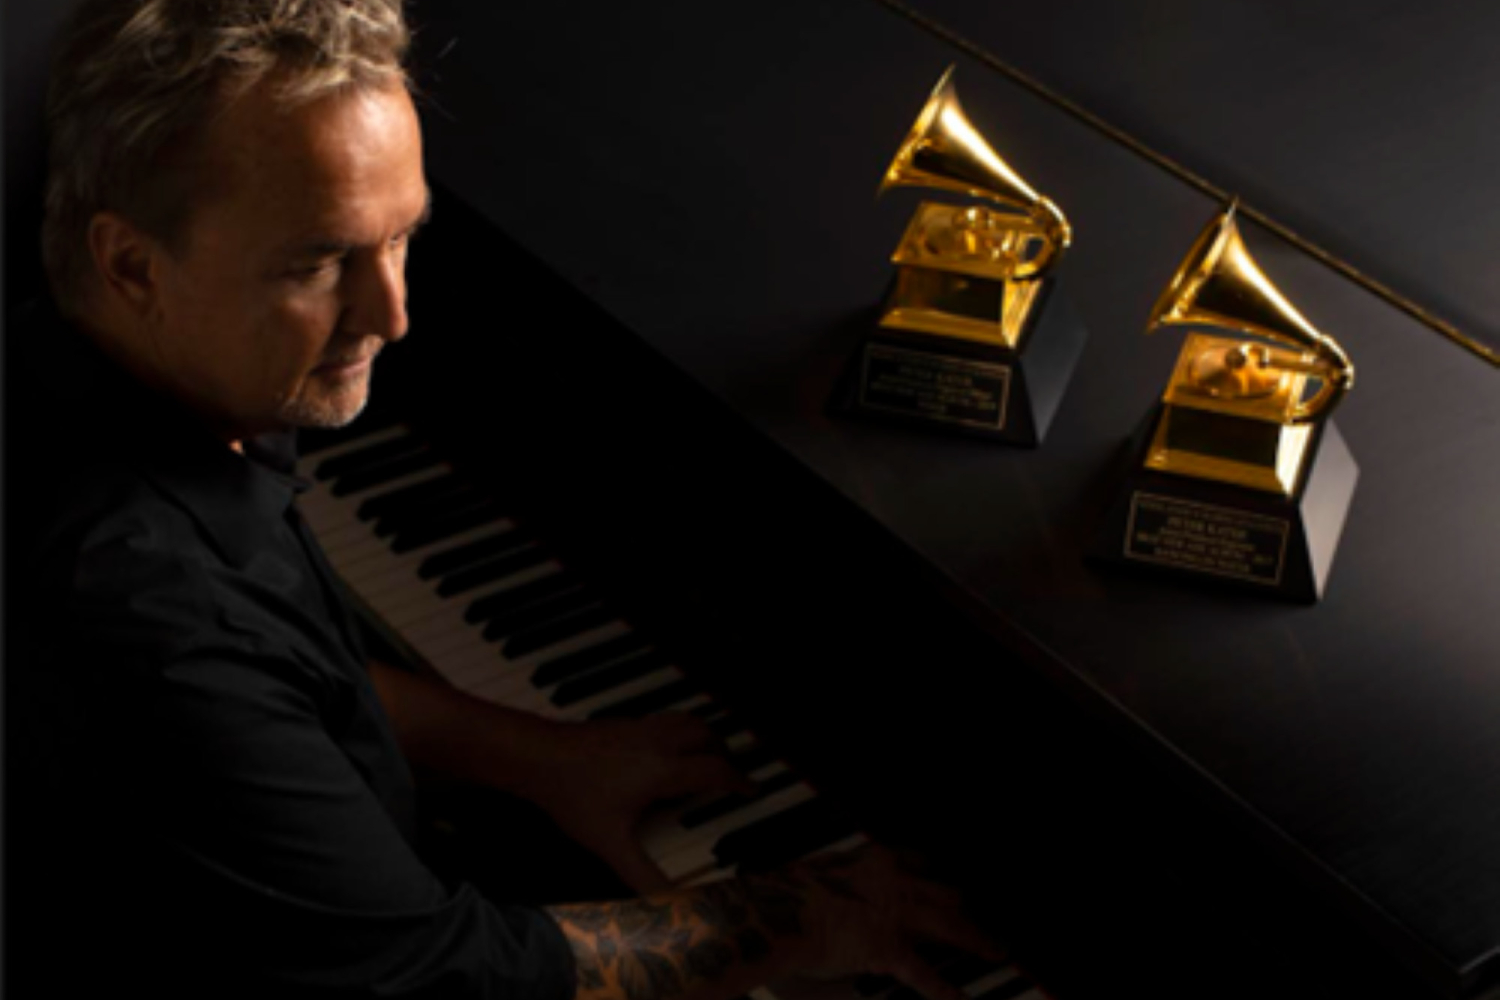 Myndstream teases new breathwork series with Grammy Award winner Peter Kater